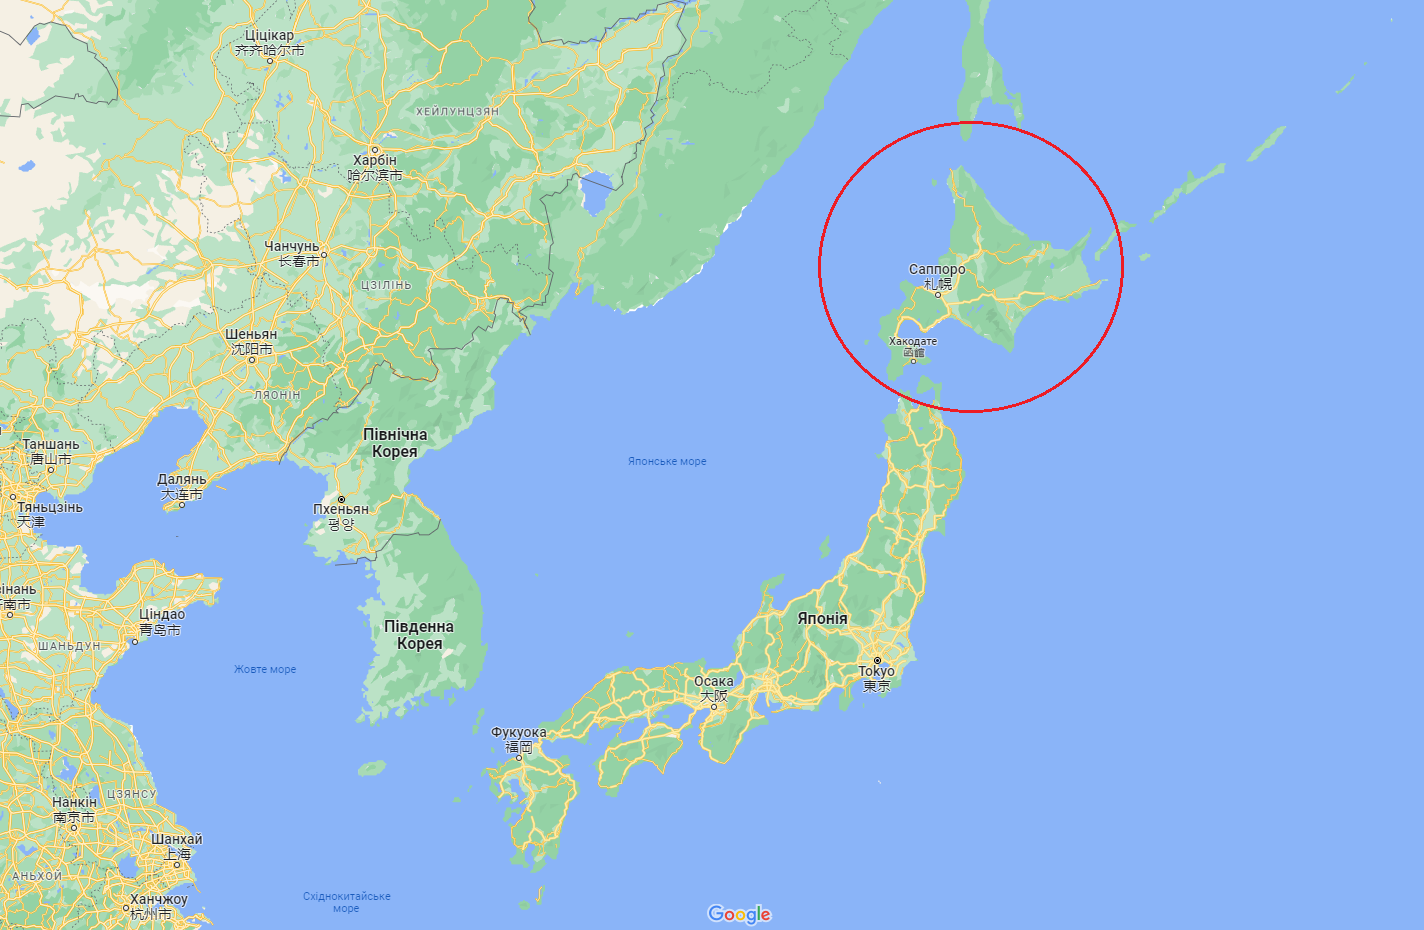 КНДР запустила новий вид балістичної ракети: в Японії навіть закликали до евакуації на острові Хокайдо